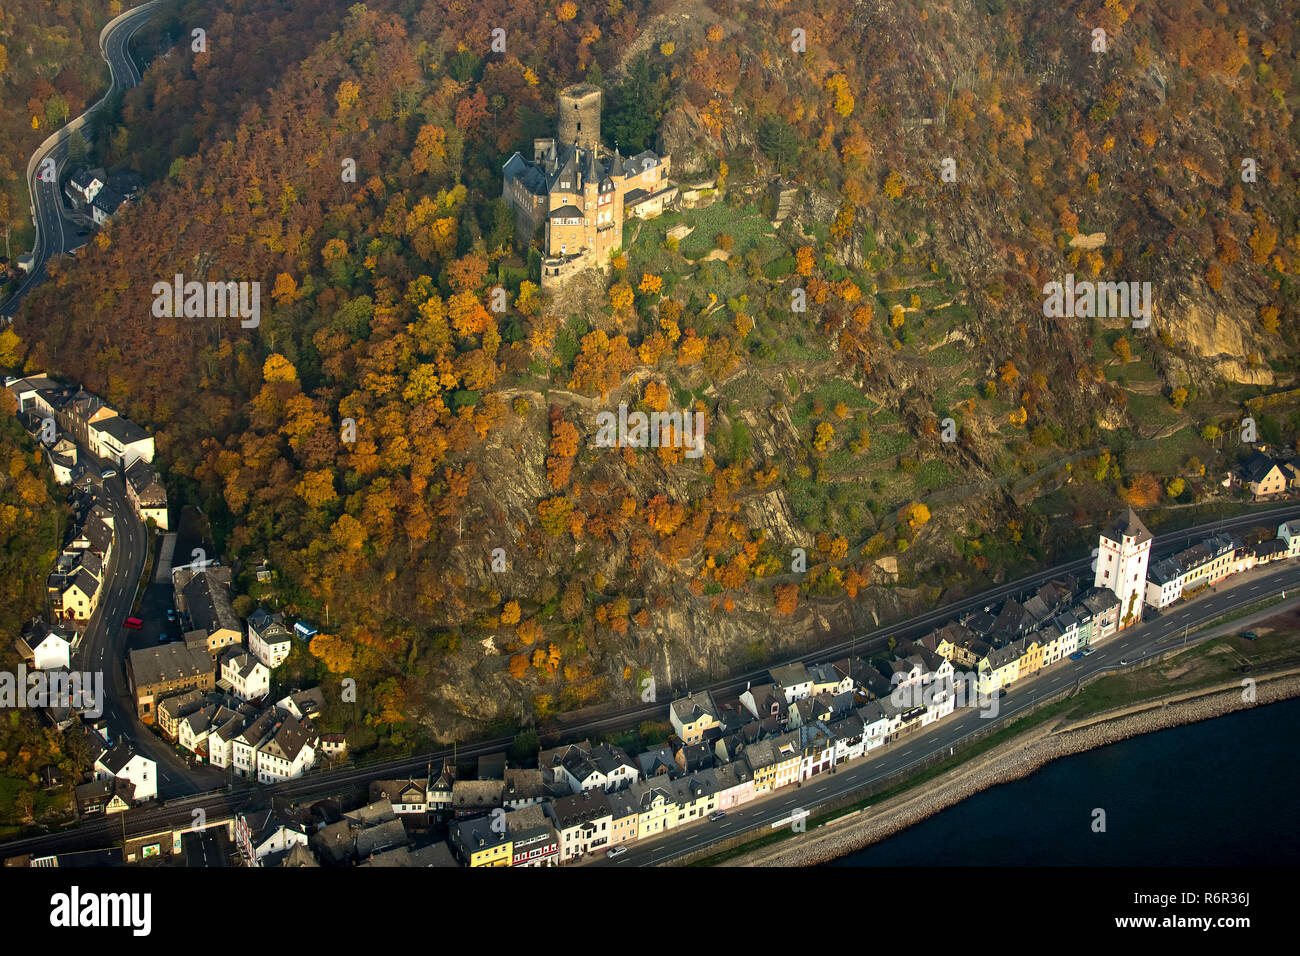 Burg Katz im Rheintal, Rhein bei St.Goarshausen,  Sankt Goar, Rheintal, Rheinland-Pfalz, Deutschland Stock Photo